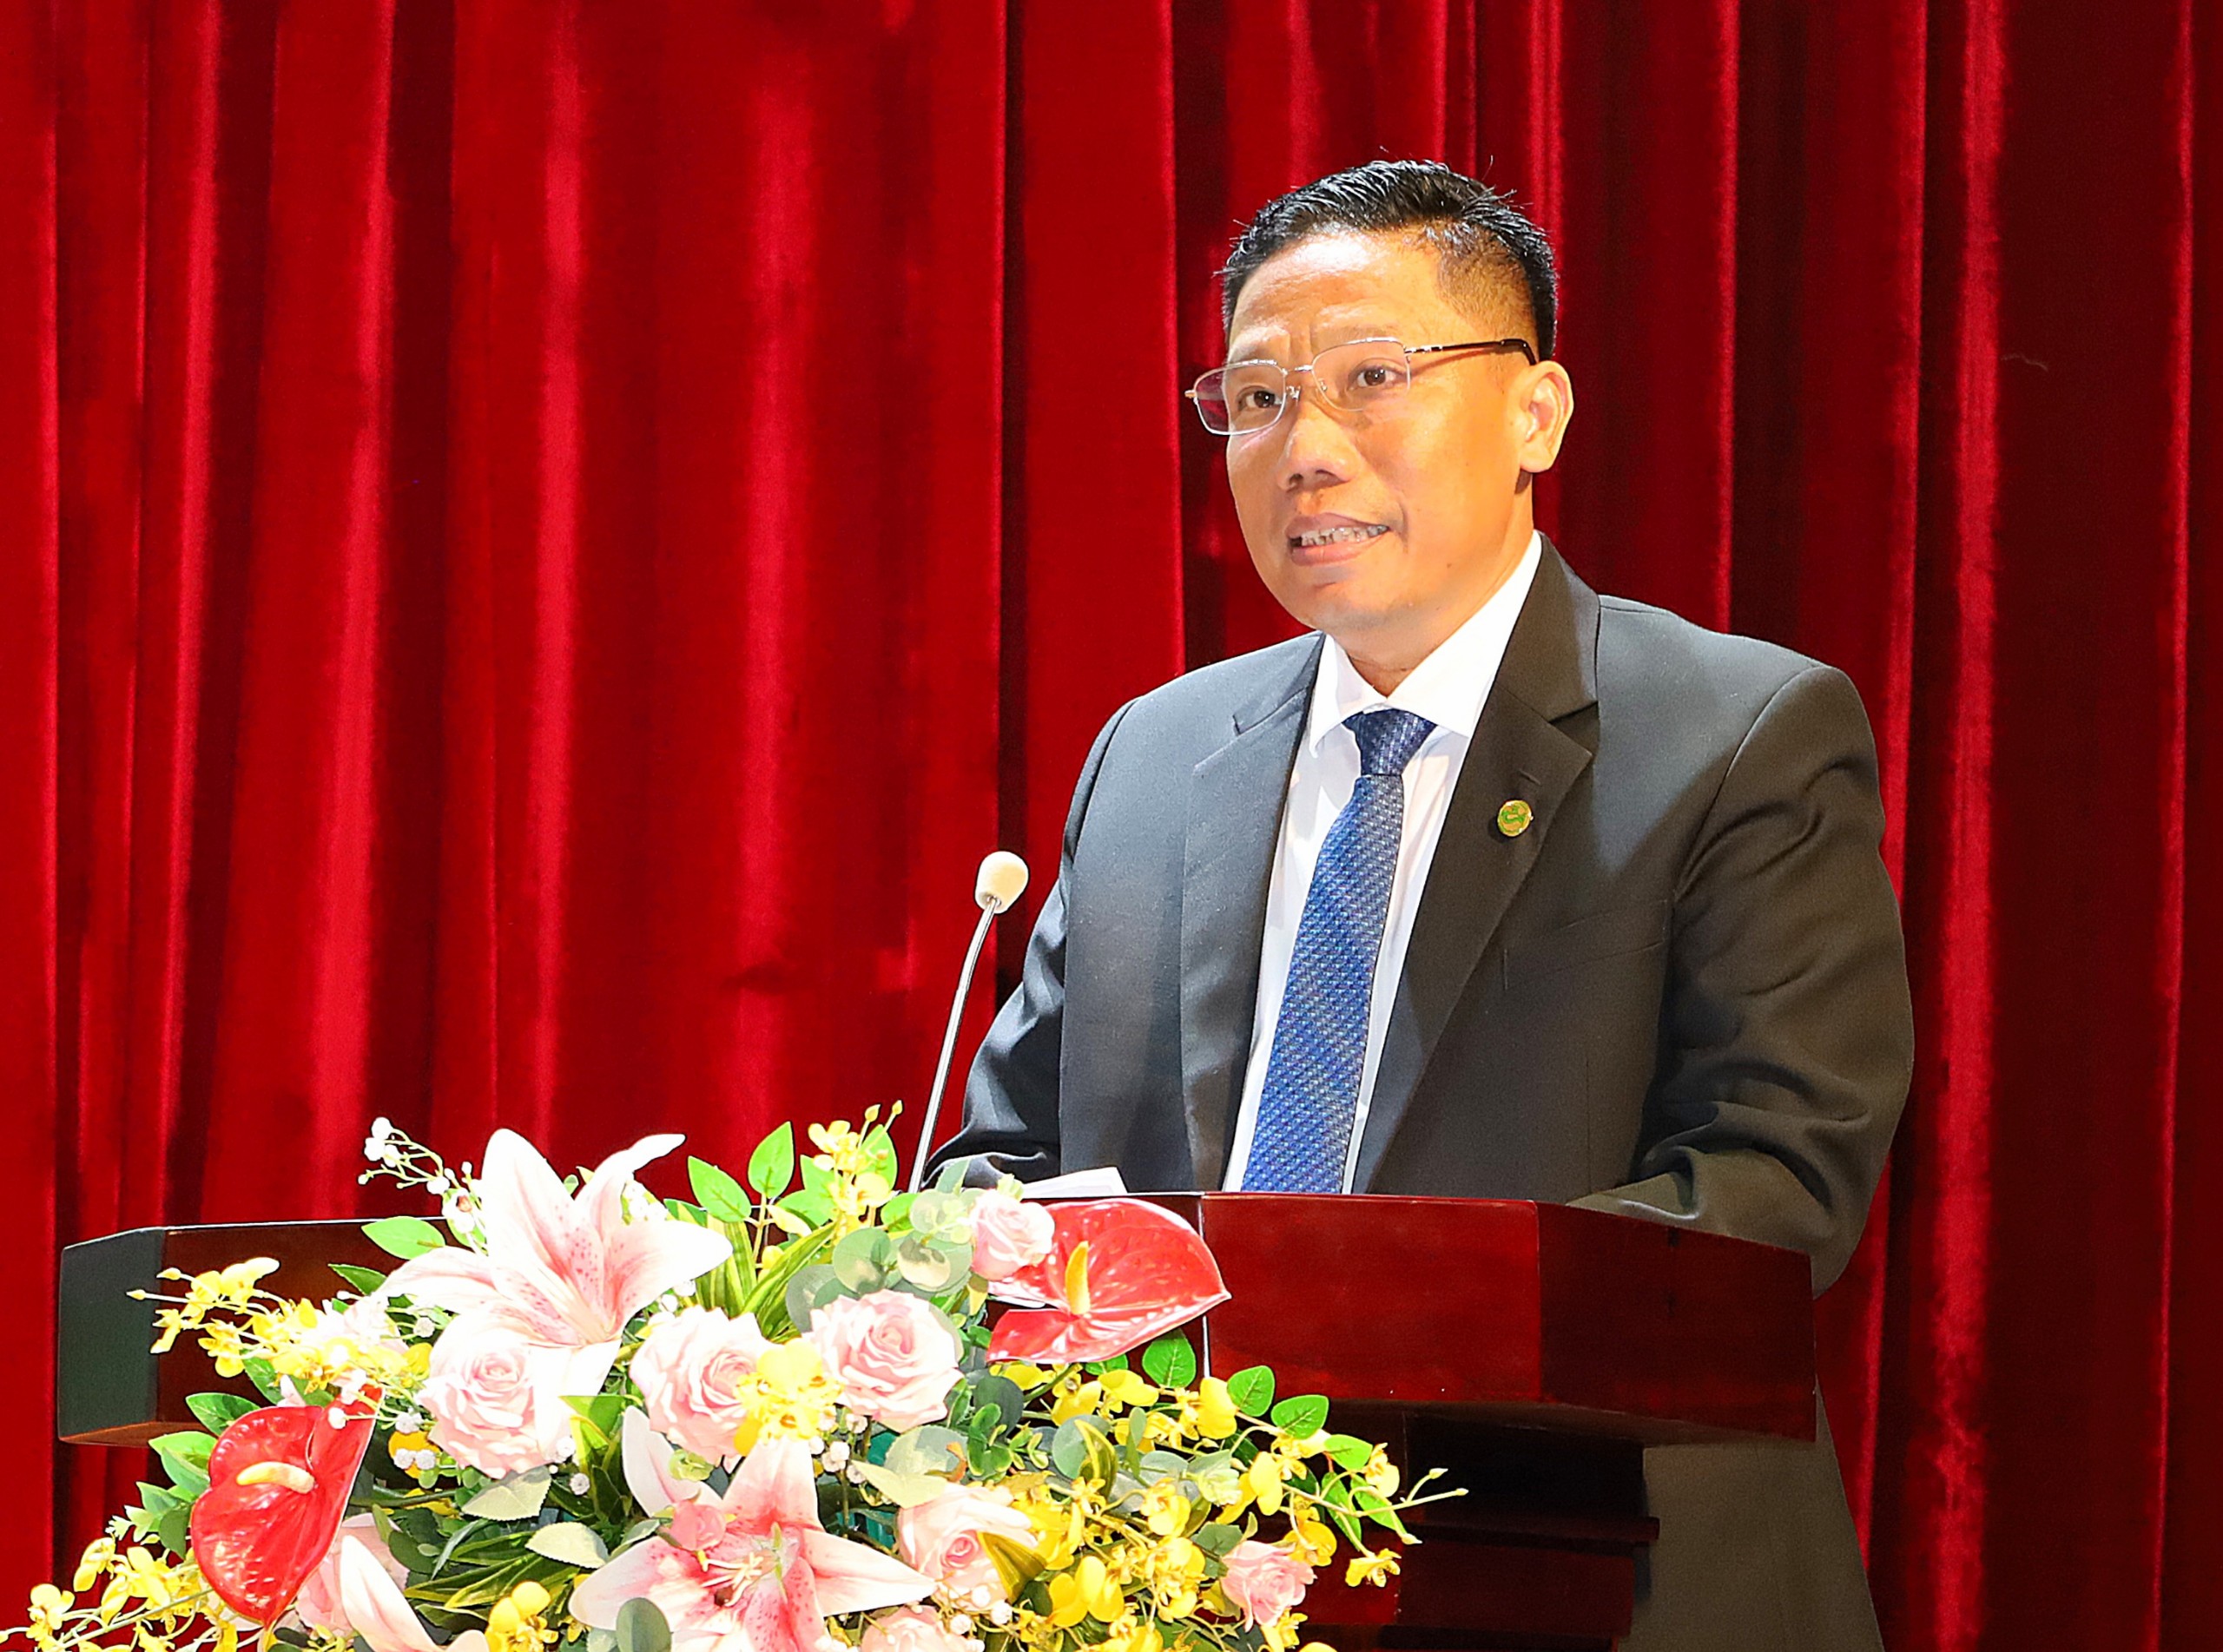 Ông Nguyễn Thực Hiện – Phó Chủ tịch UBND TP. Cần Thơ phát biểu tại chương trình.